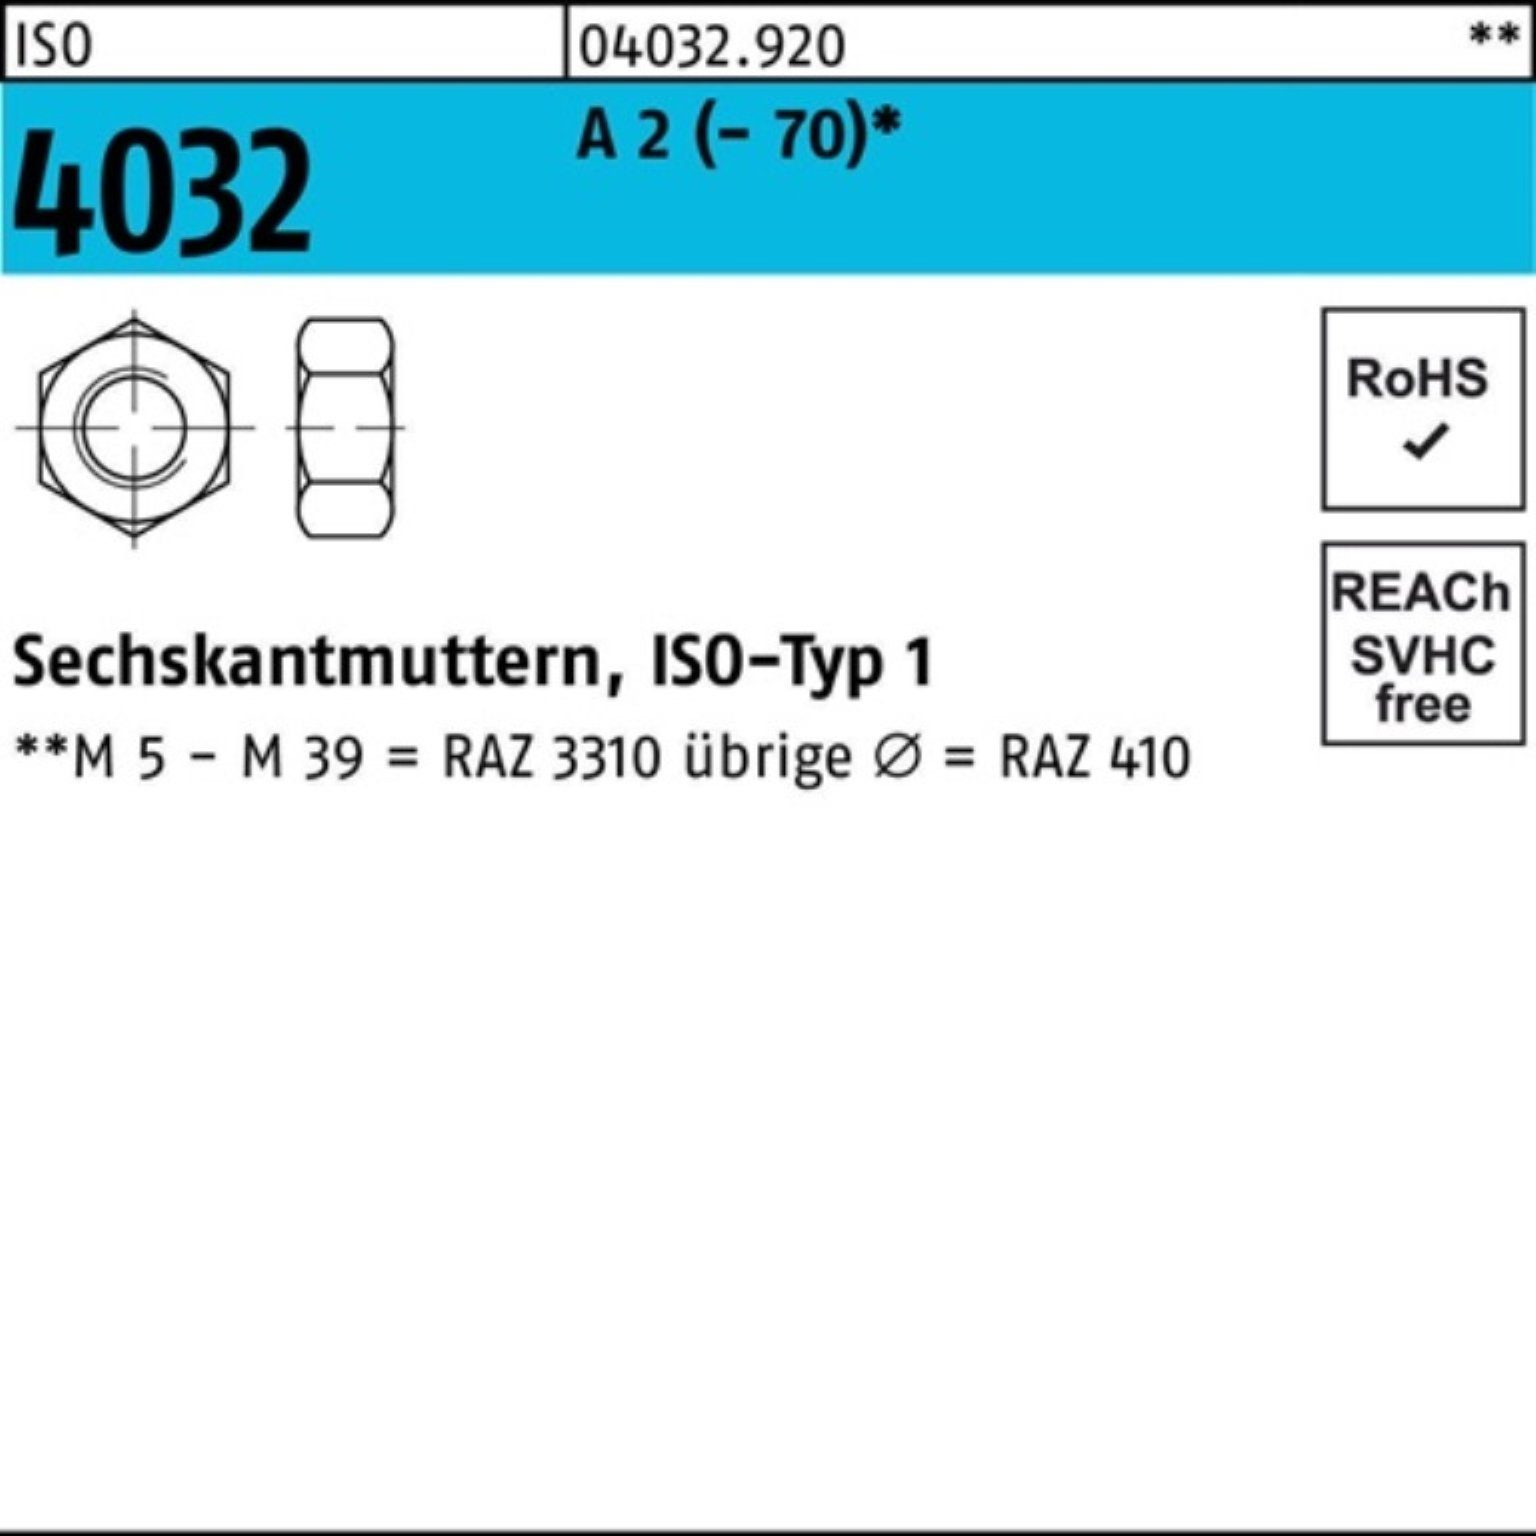 4032 Bufab 70 A Sechskantmutter Pack 2 Stück 2 100er ISO M48 - ISO A 4032 1 Muttern